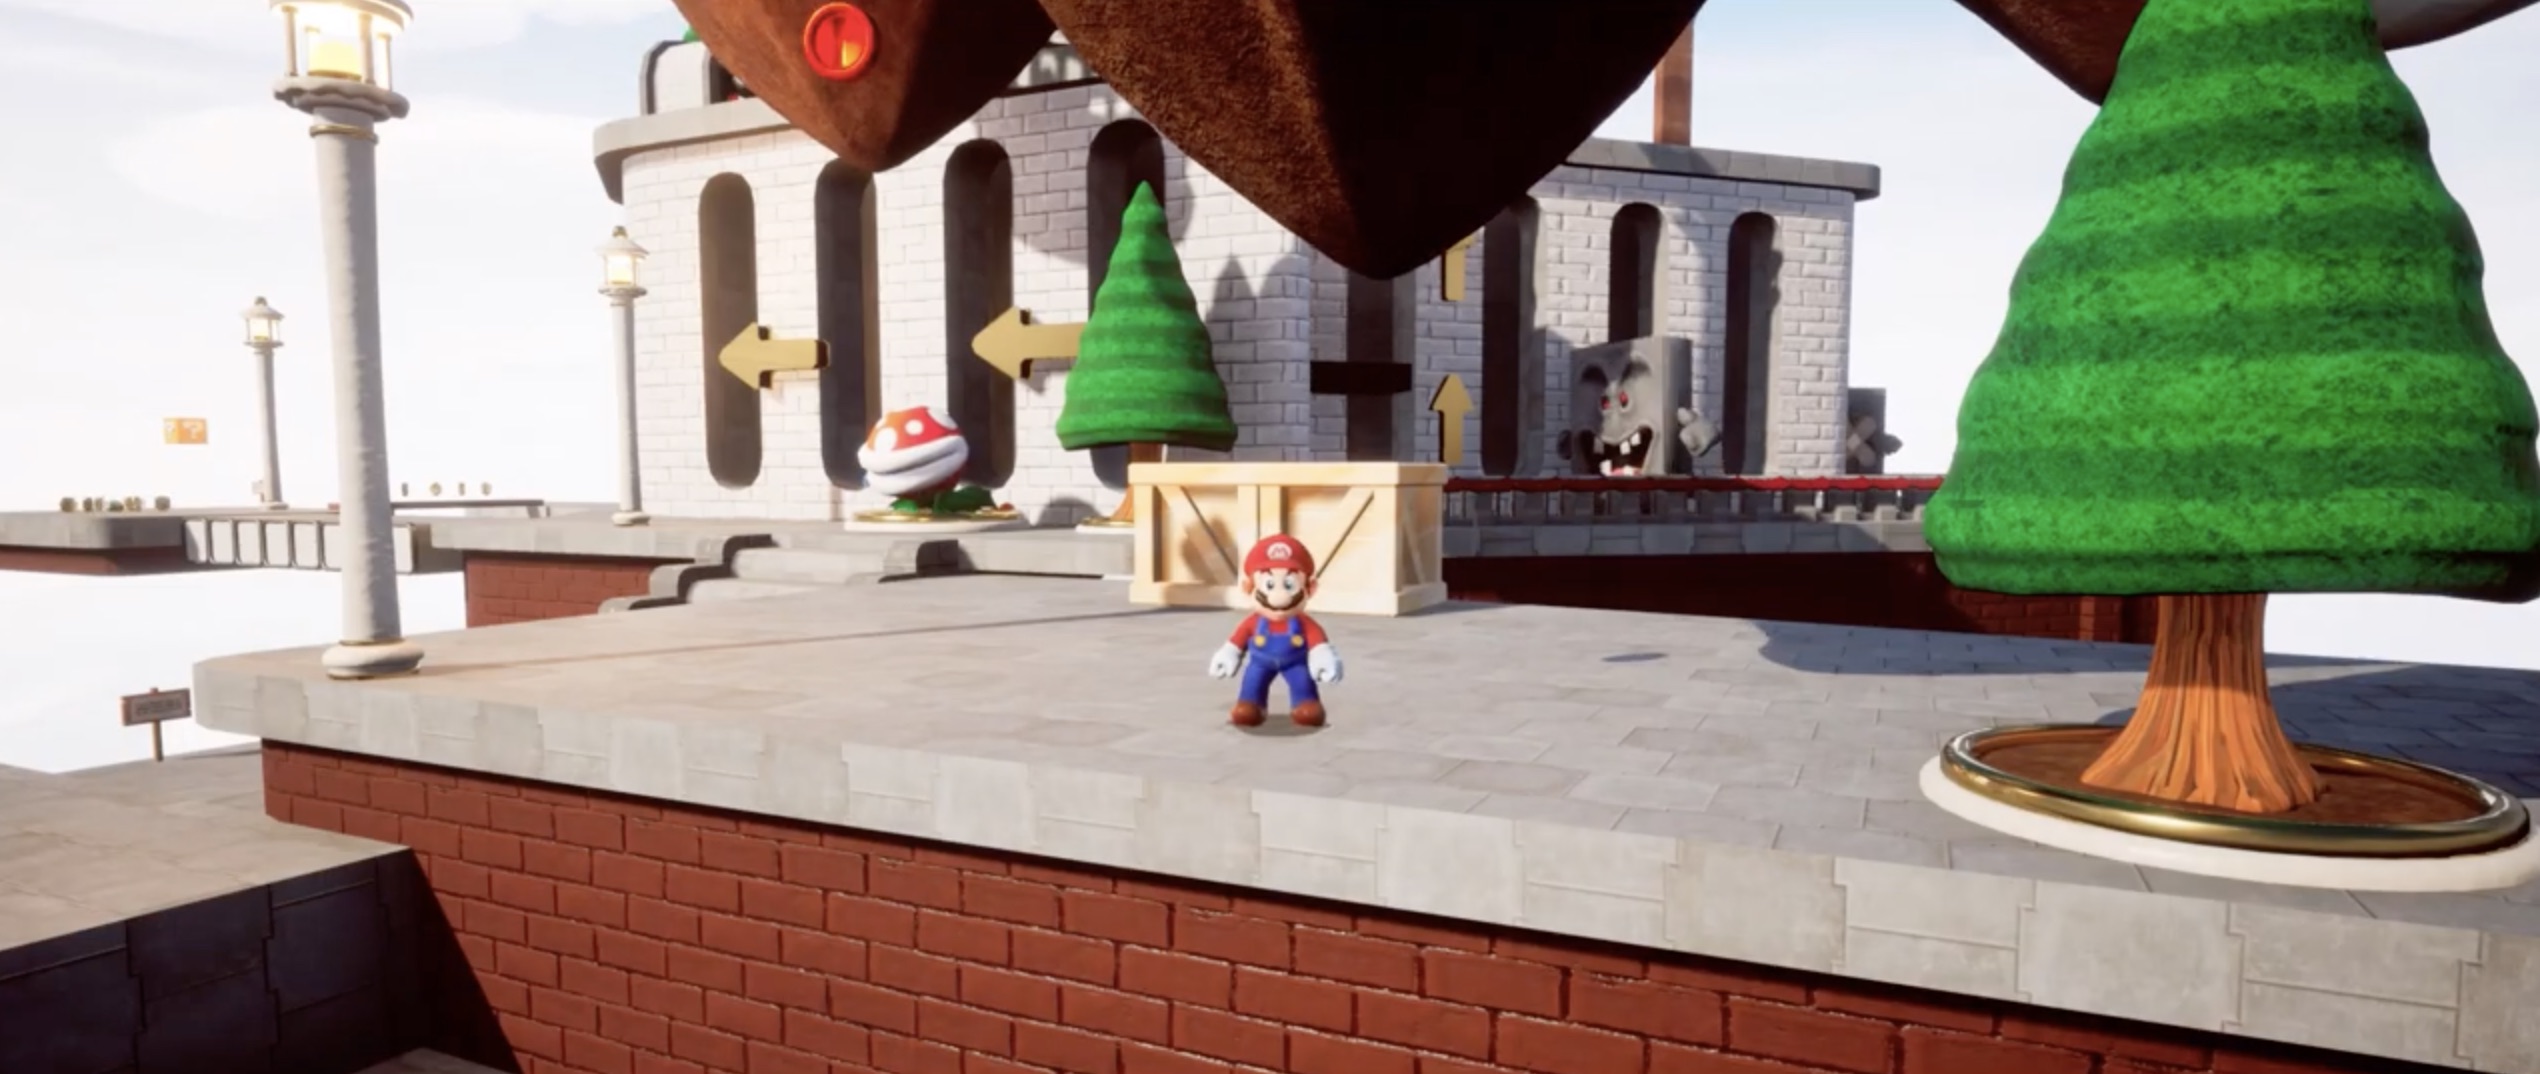 Super Mario 64 Reimagined